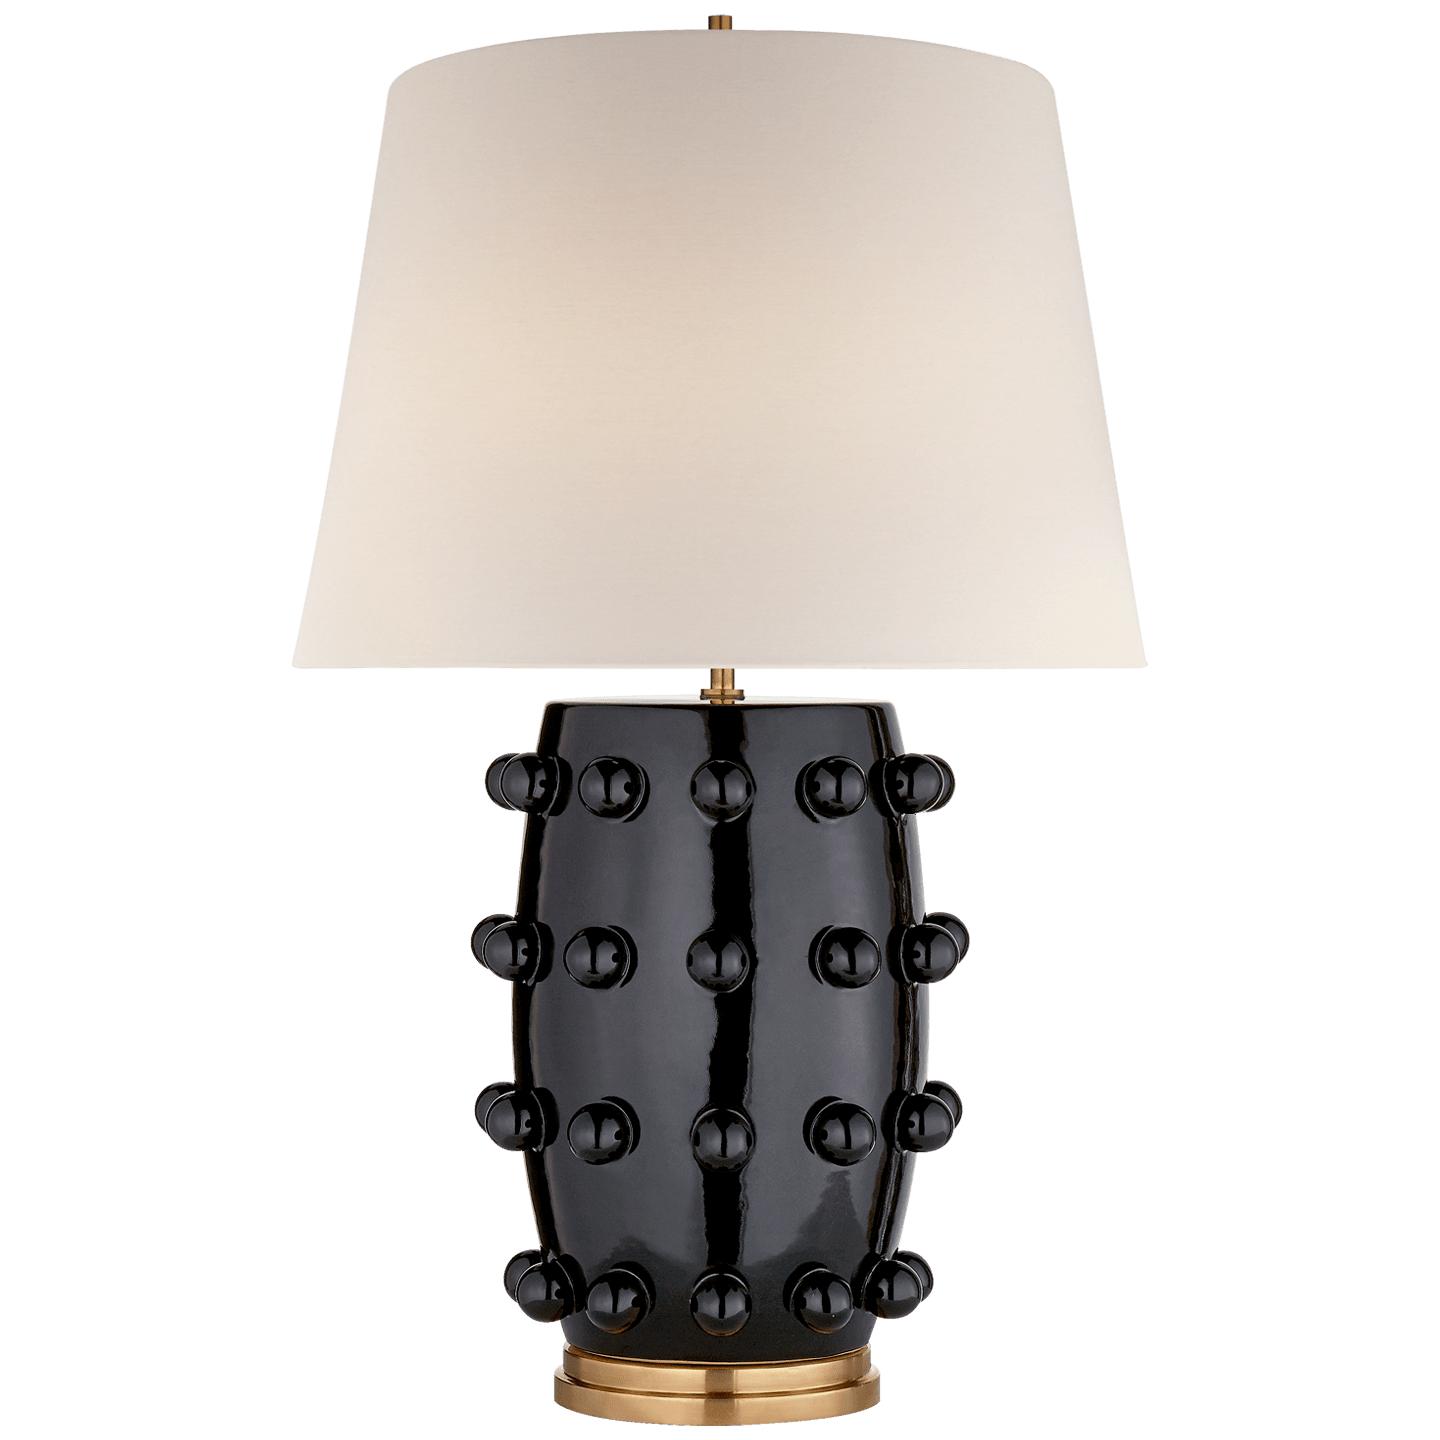 Купить Настольная лампа Linden Medium Lamp в интернет-магазине roooms.ru